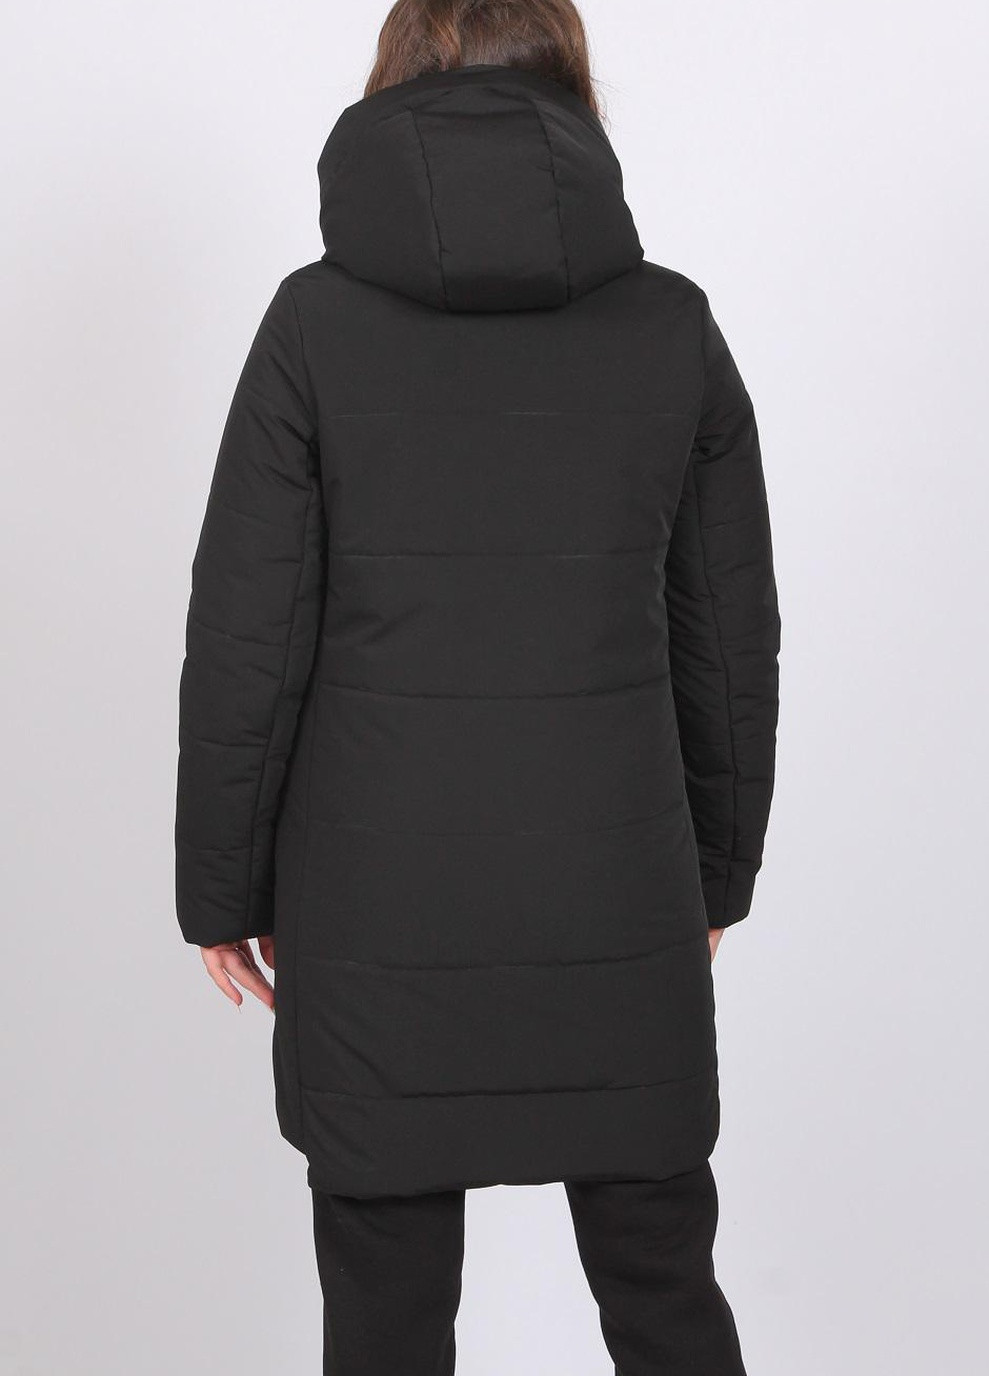 Чорна куртка удлиненная женская 205 плащевка черная Актуаль